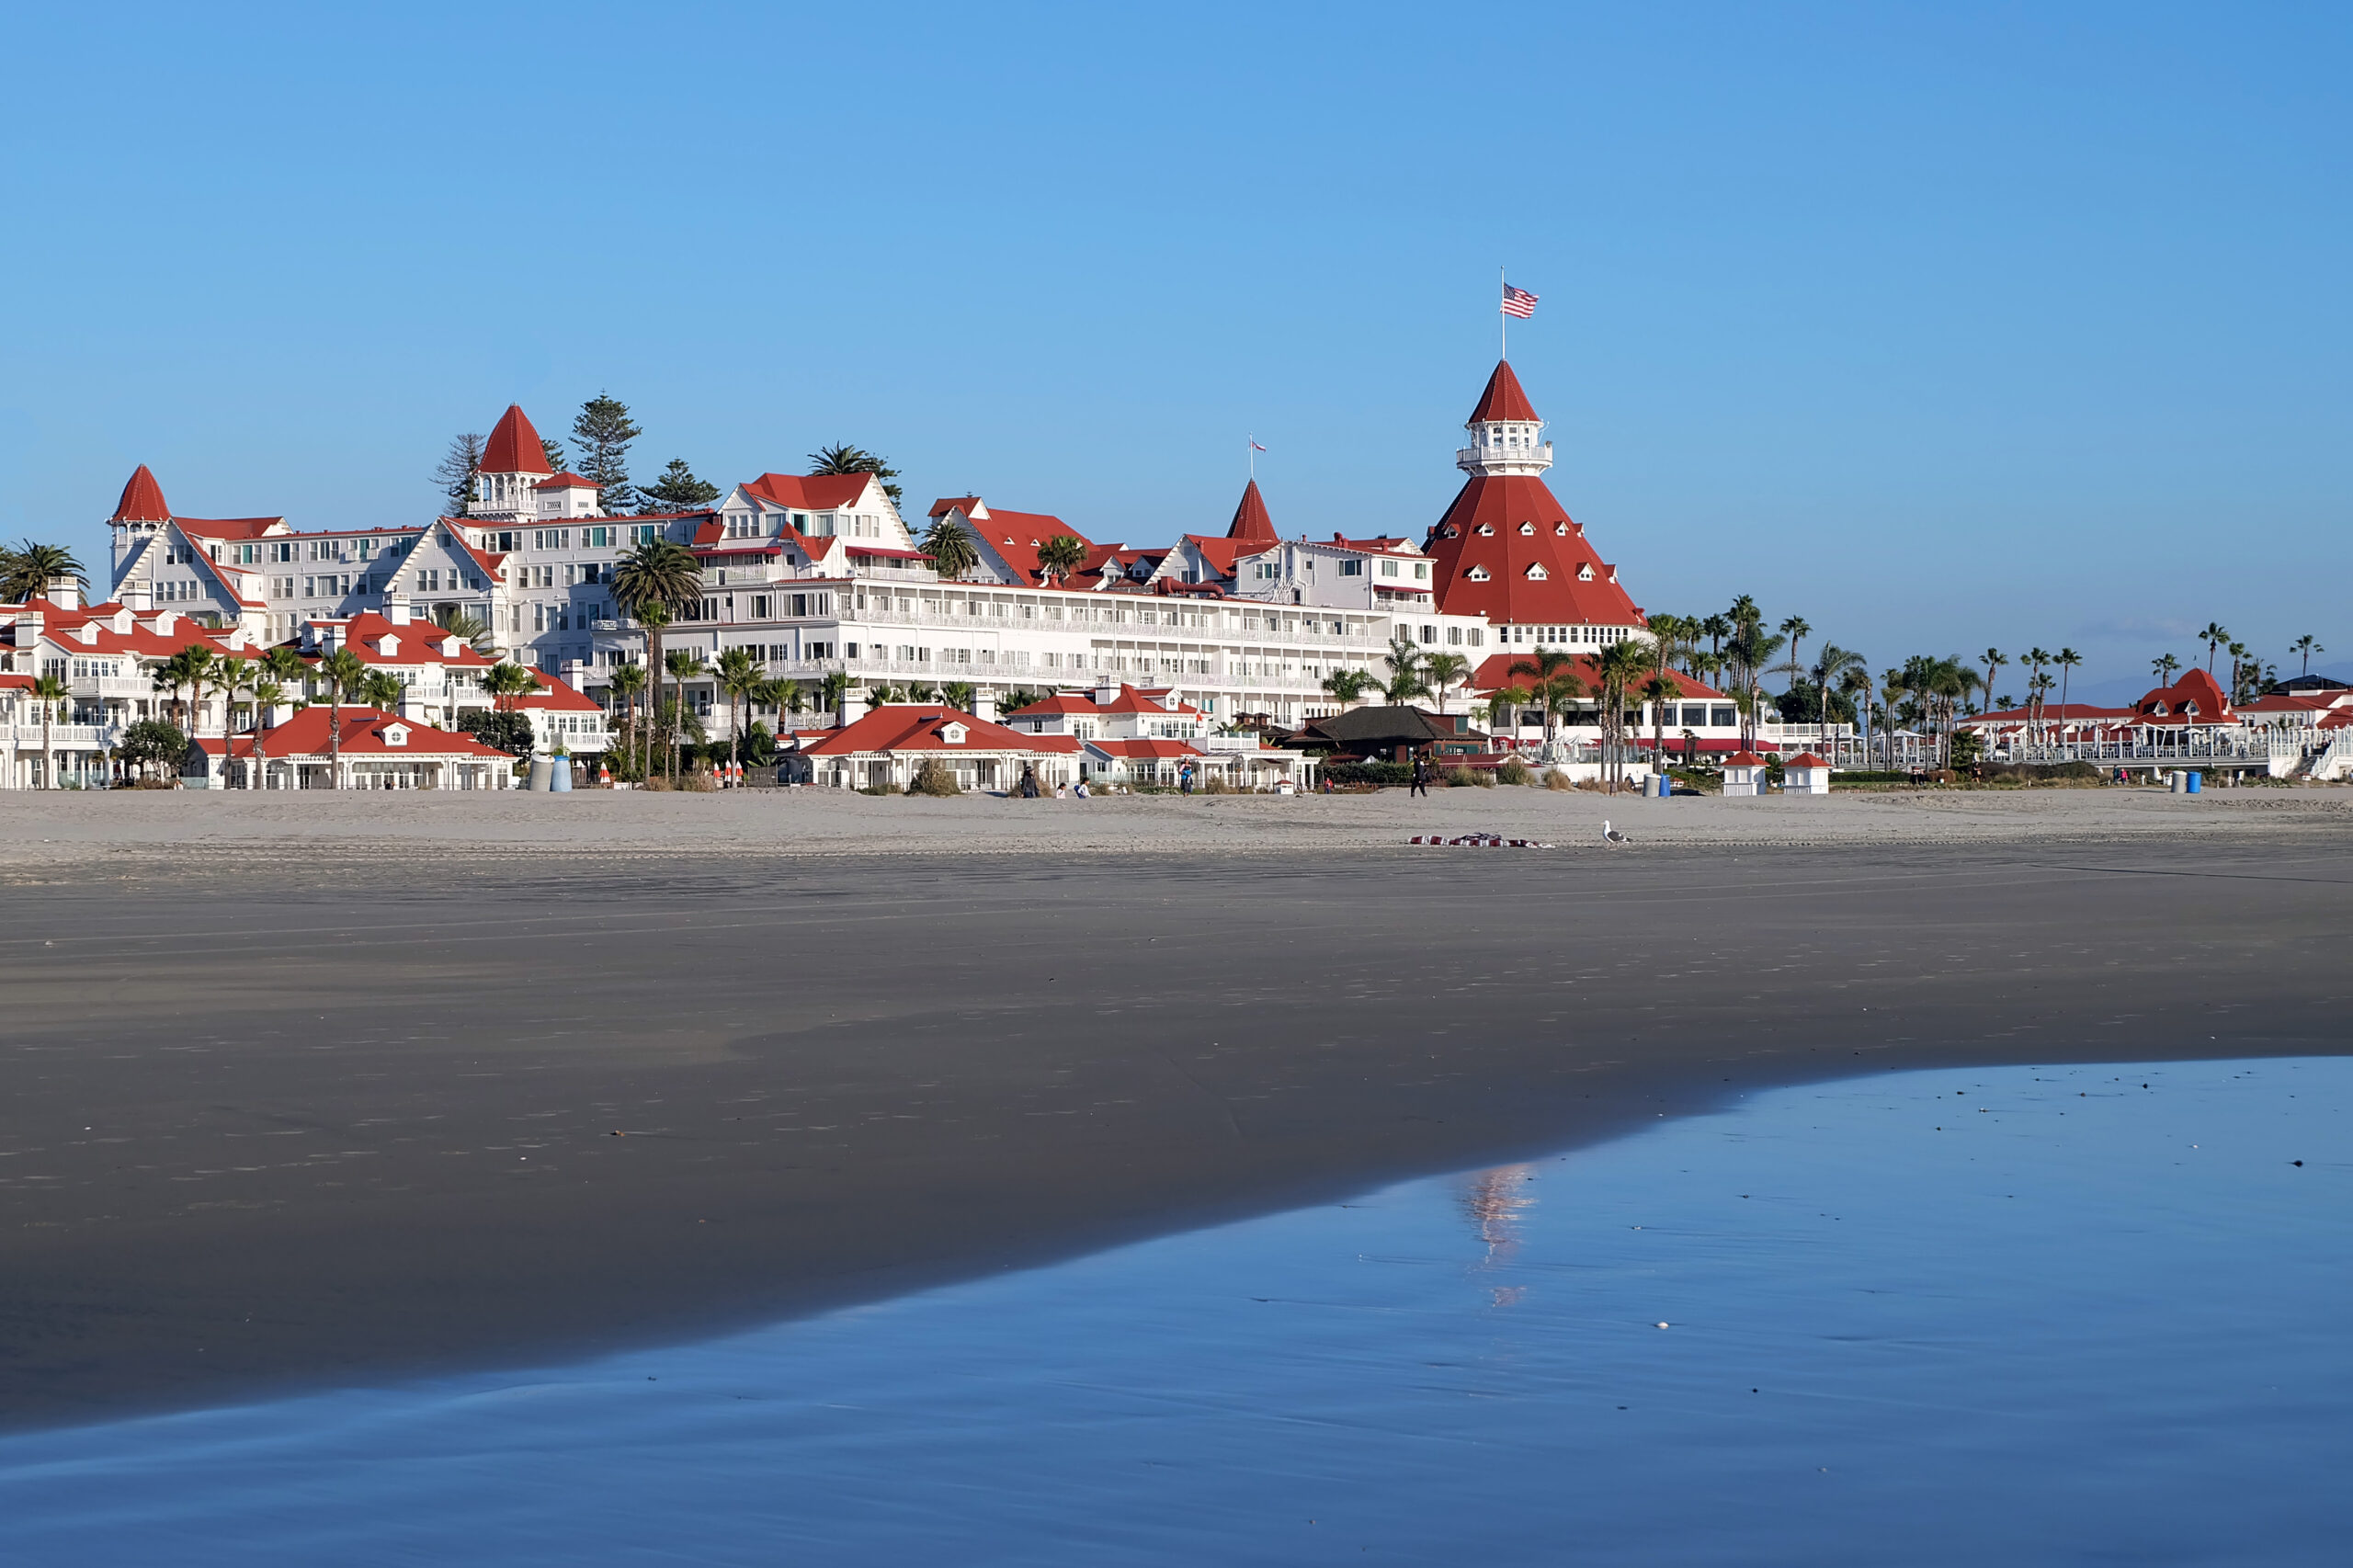 view from beach of Hotel del Coronado